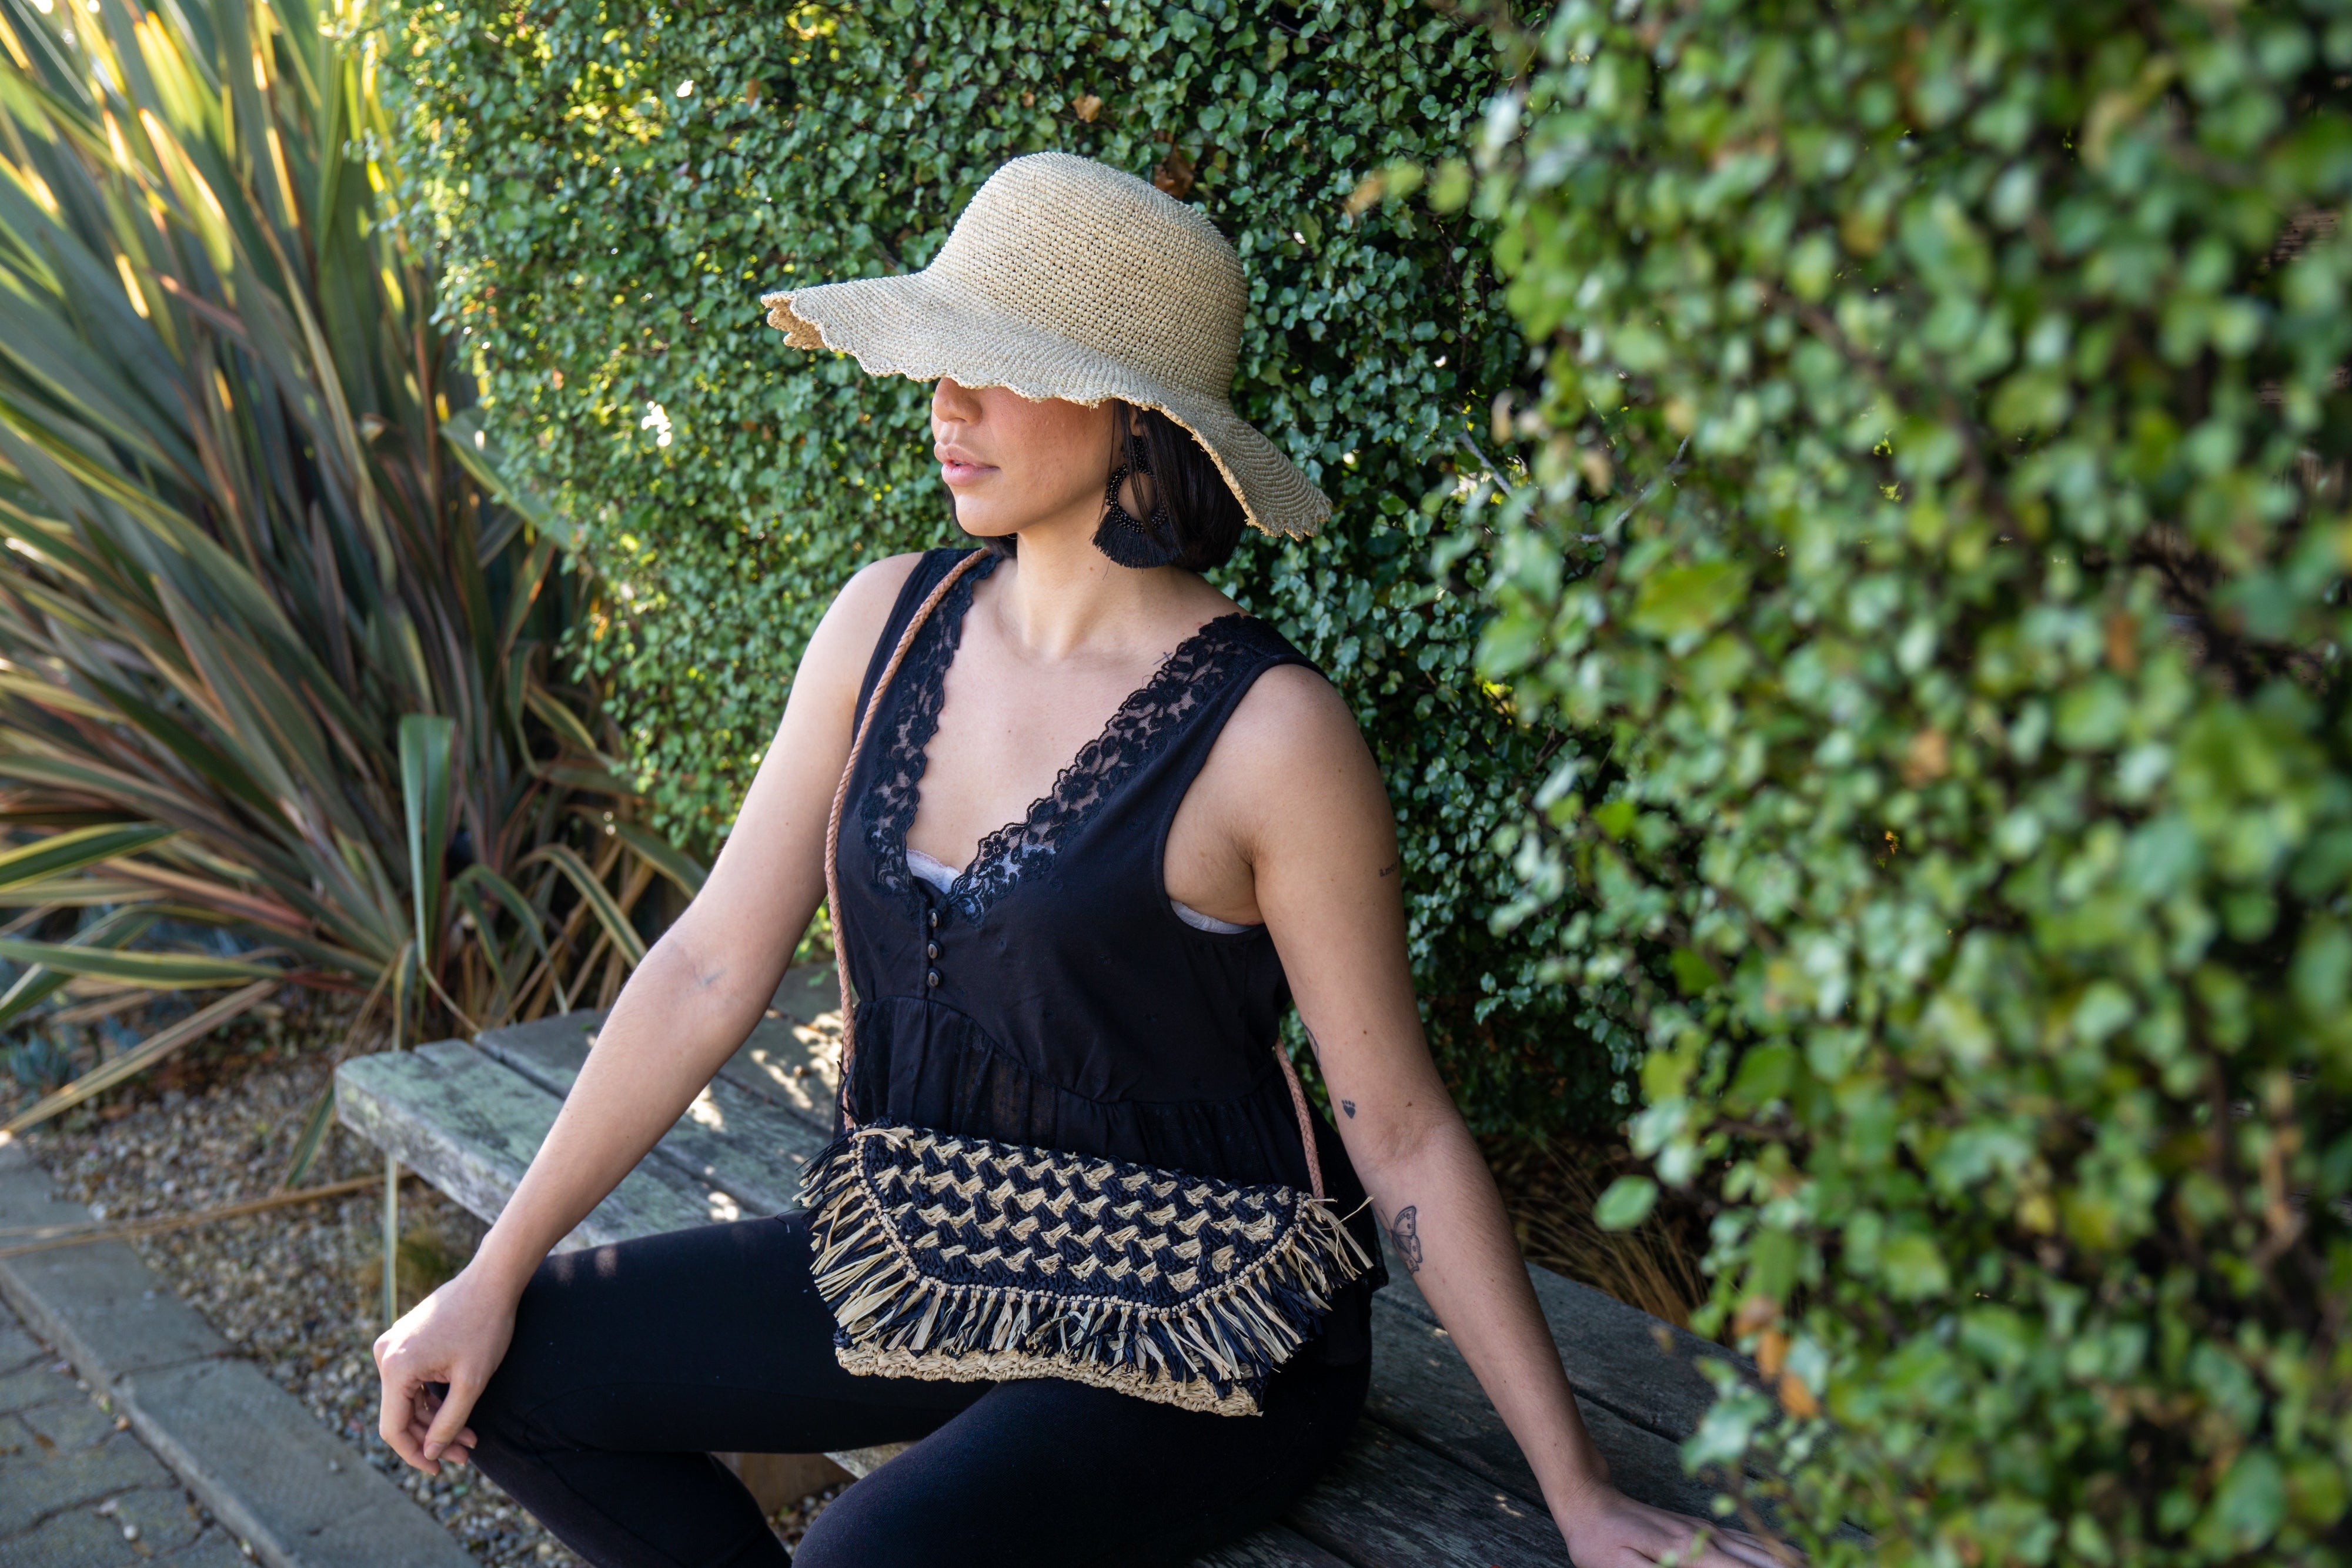 Straw-Paper Crochet Crossbody Bag for Women